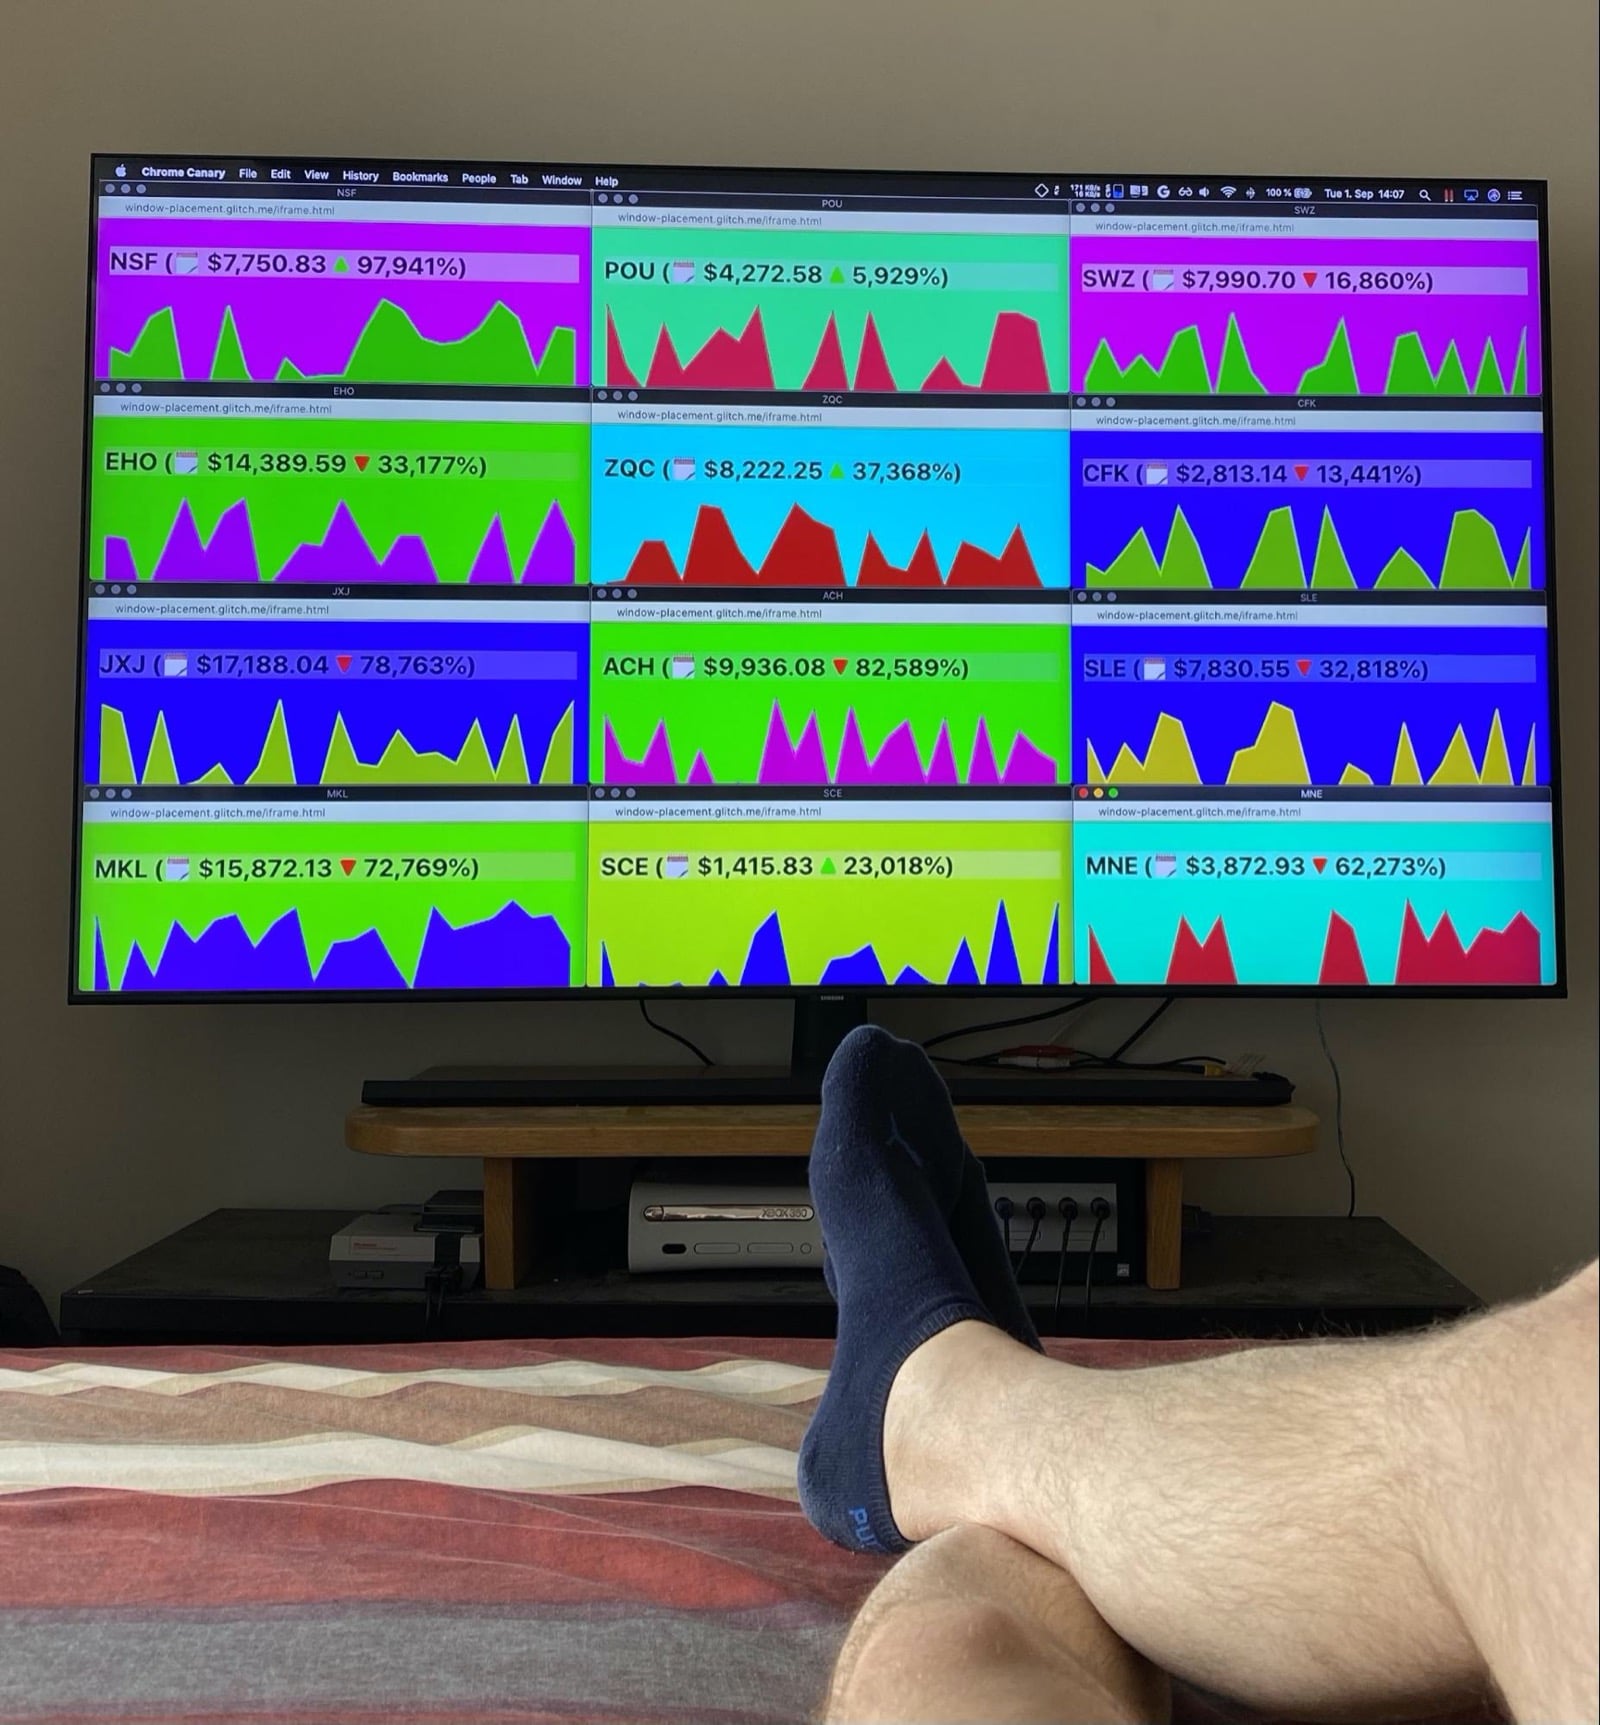 Riesiger Fernsehbildschirm am Ende eines Betts, die Beine des Autors sind teilweise zu sehen. Auf dem Bildschirm ist eine gefälschte Handelsplattform für Kryptowährungen zu sehen. 